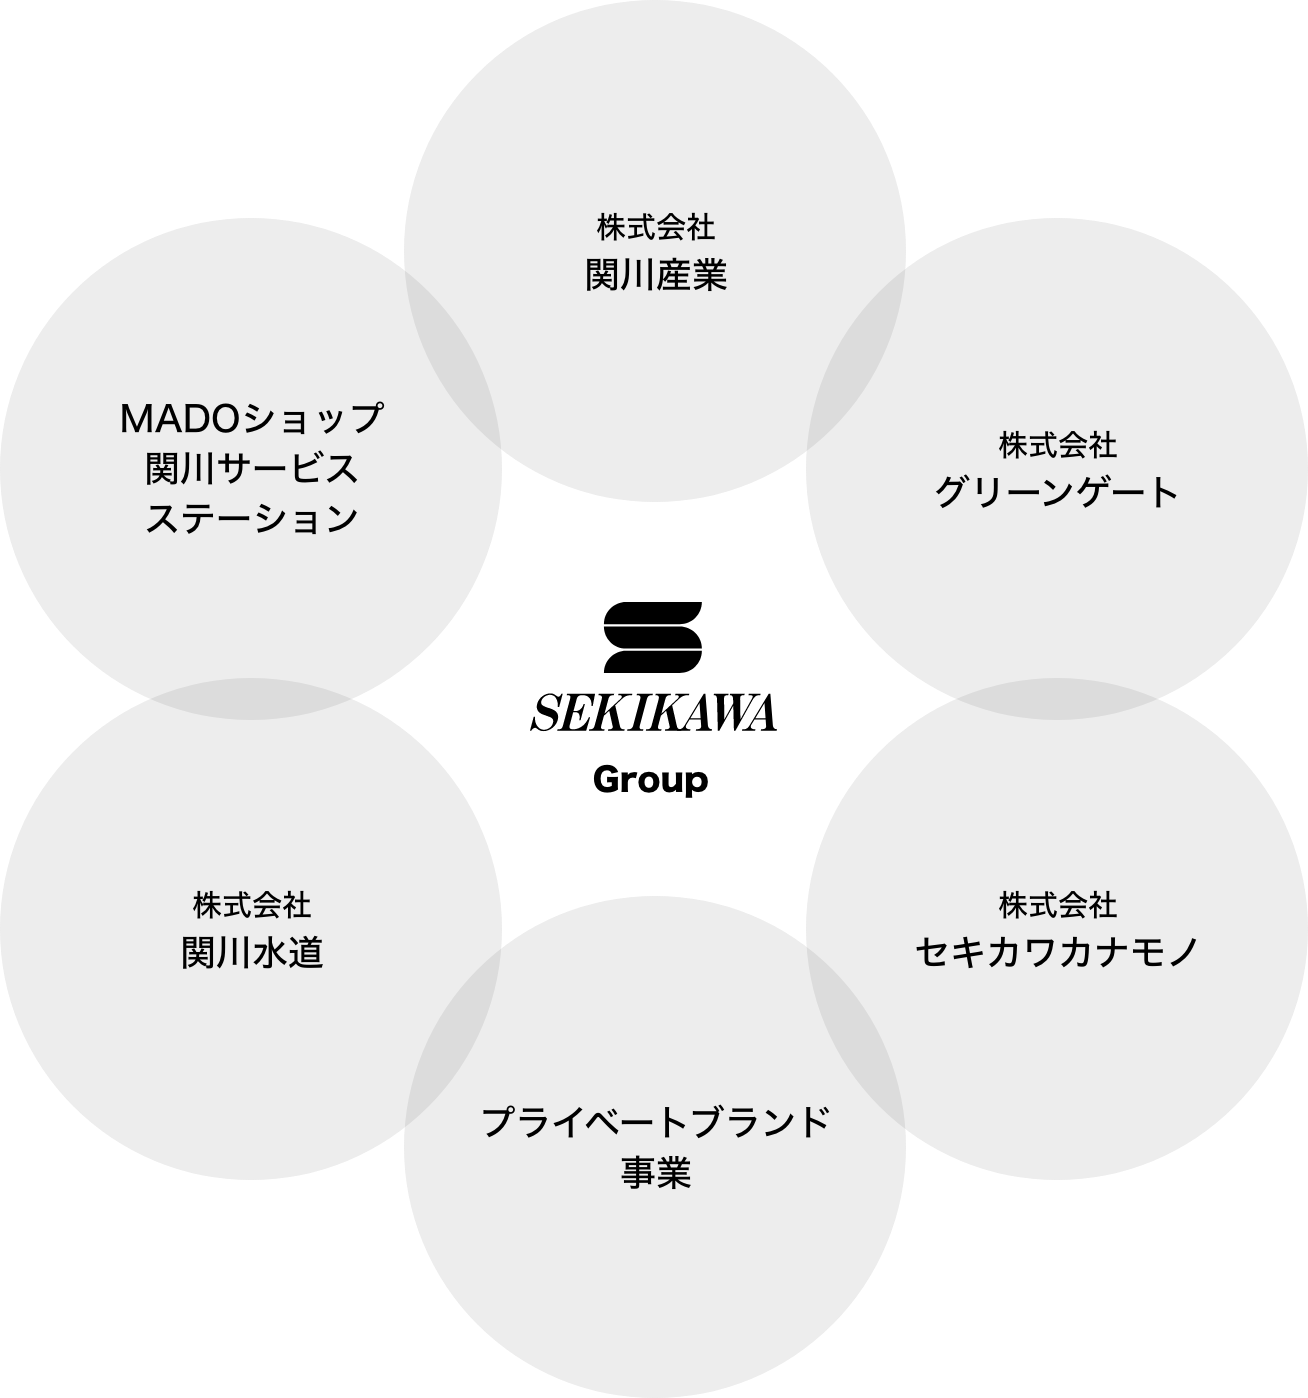 関川グループ経営方針図